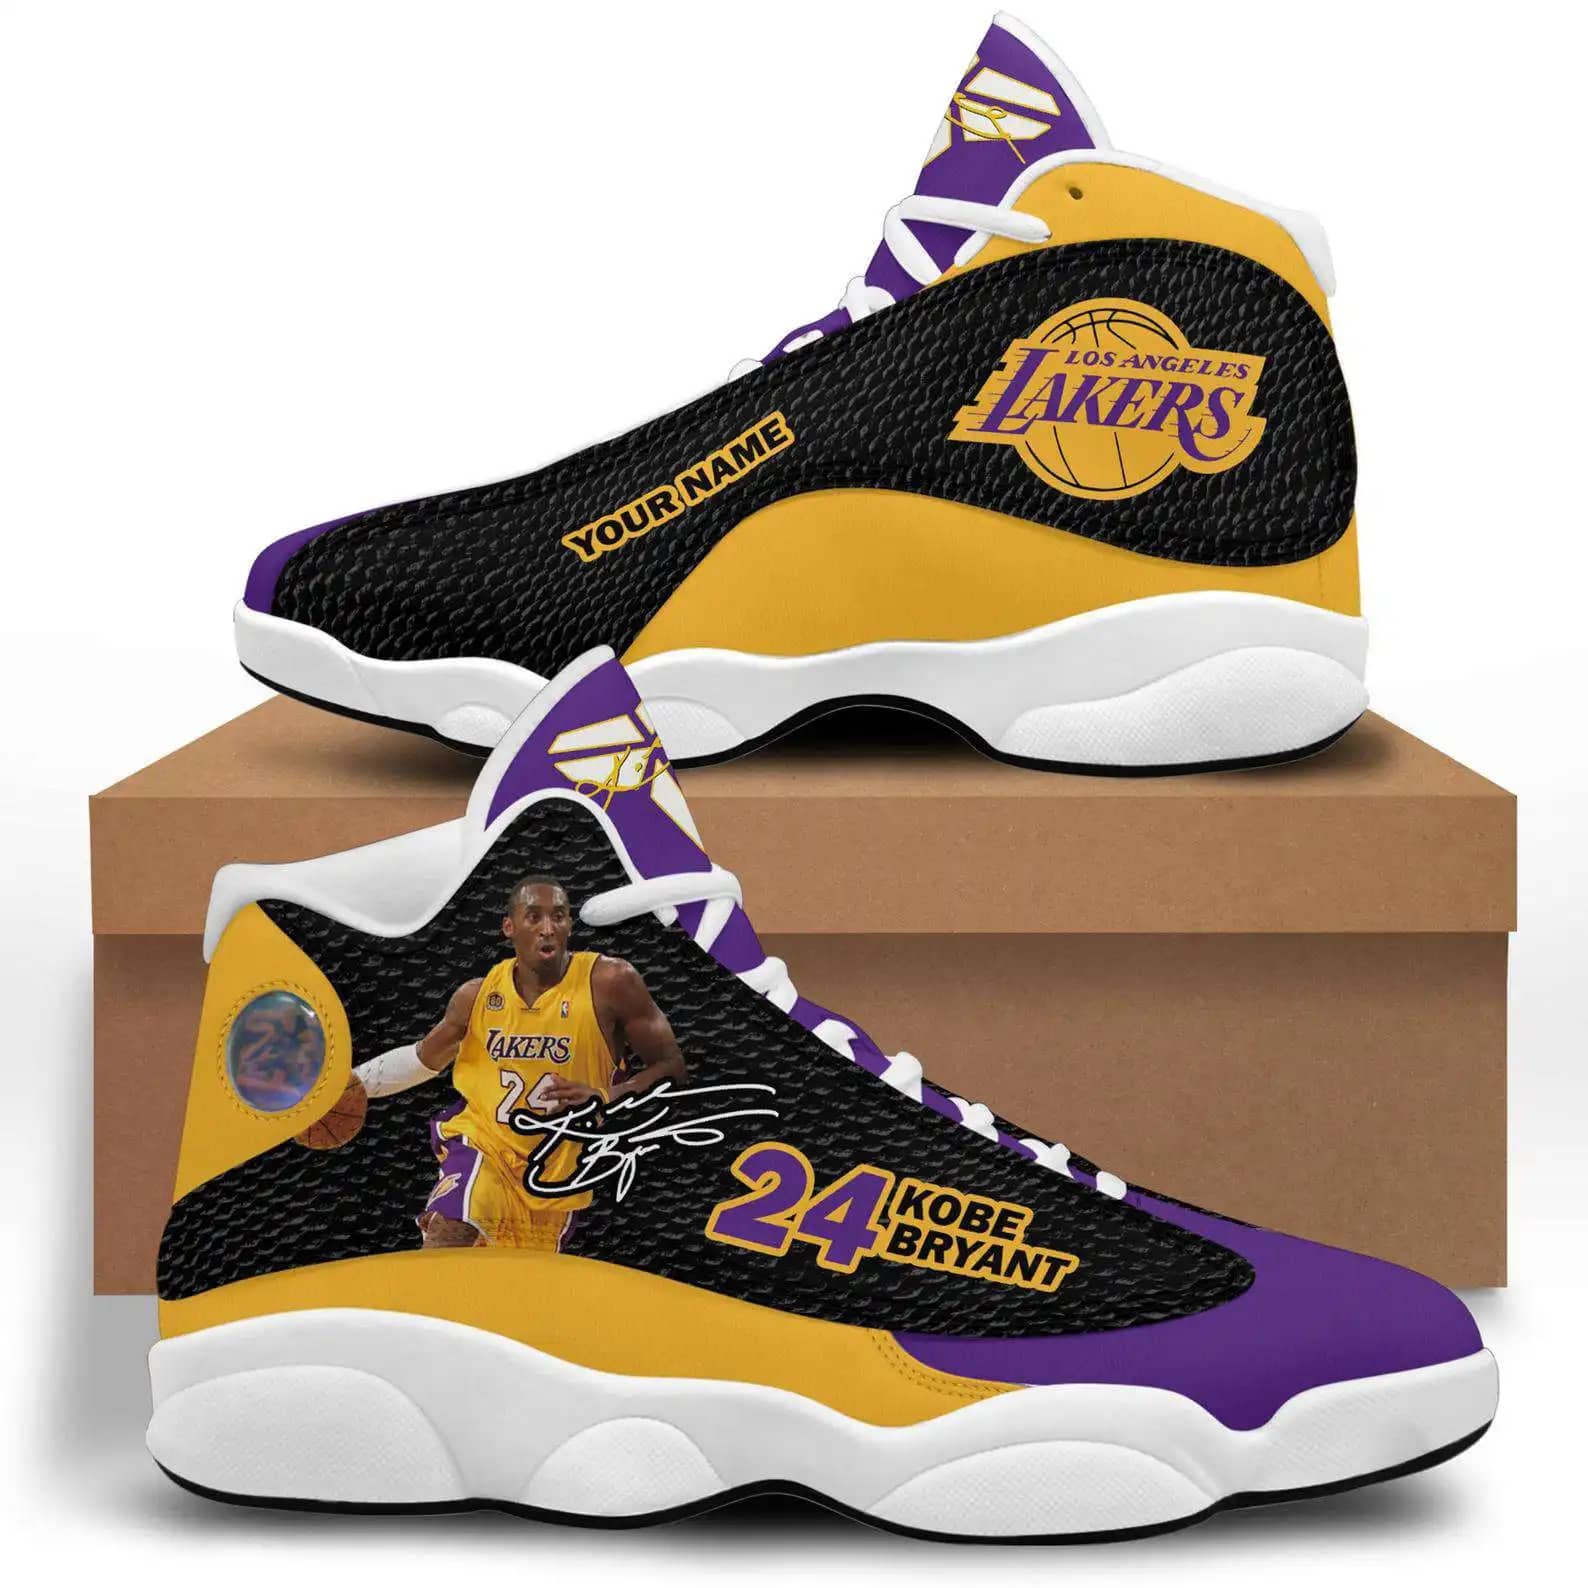 Personalized Custom Name Kobe Bryant Lakers 24 Air Jordan Shoes